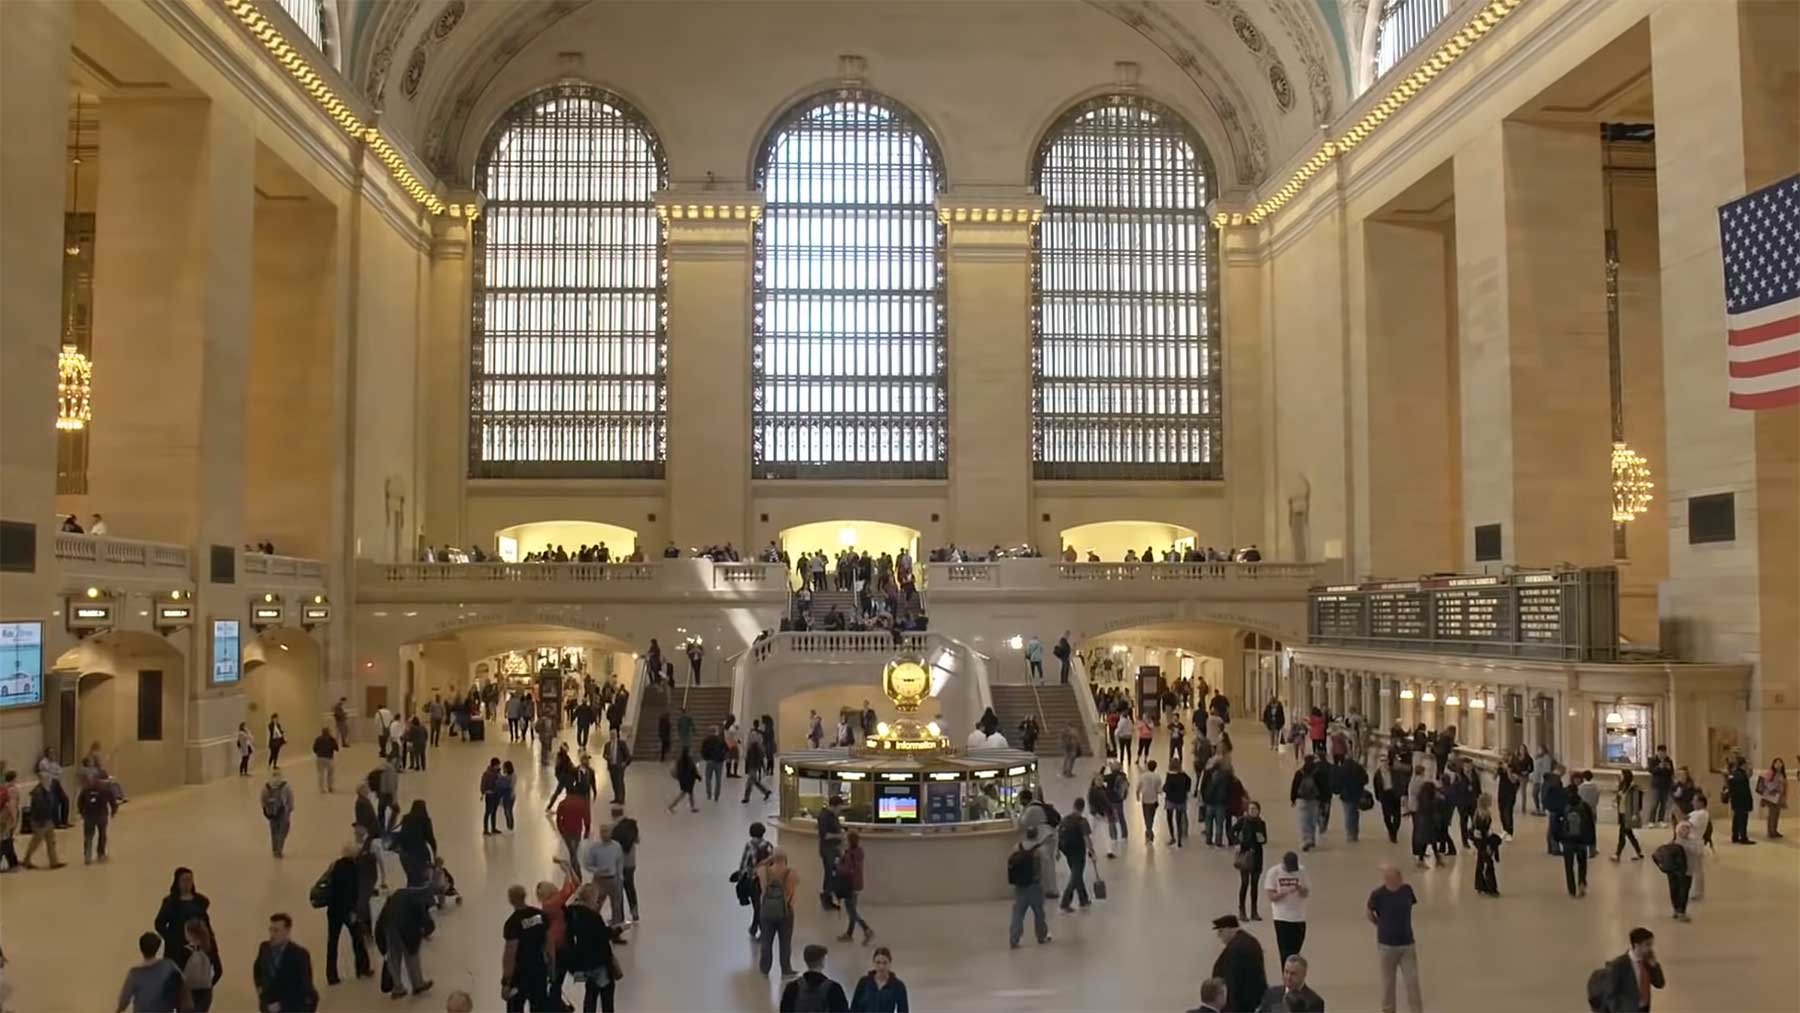 Grand Central Station: Erklärung der architektonischen Elemente grand-central-station-architektur-elemente-erklaert 